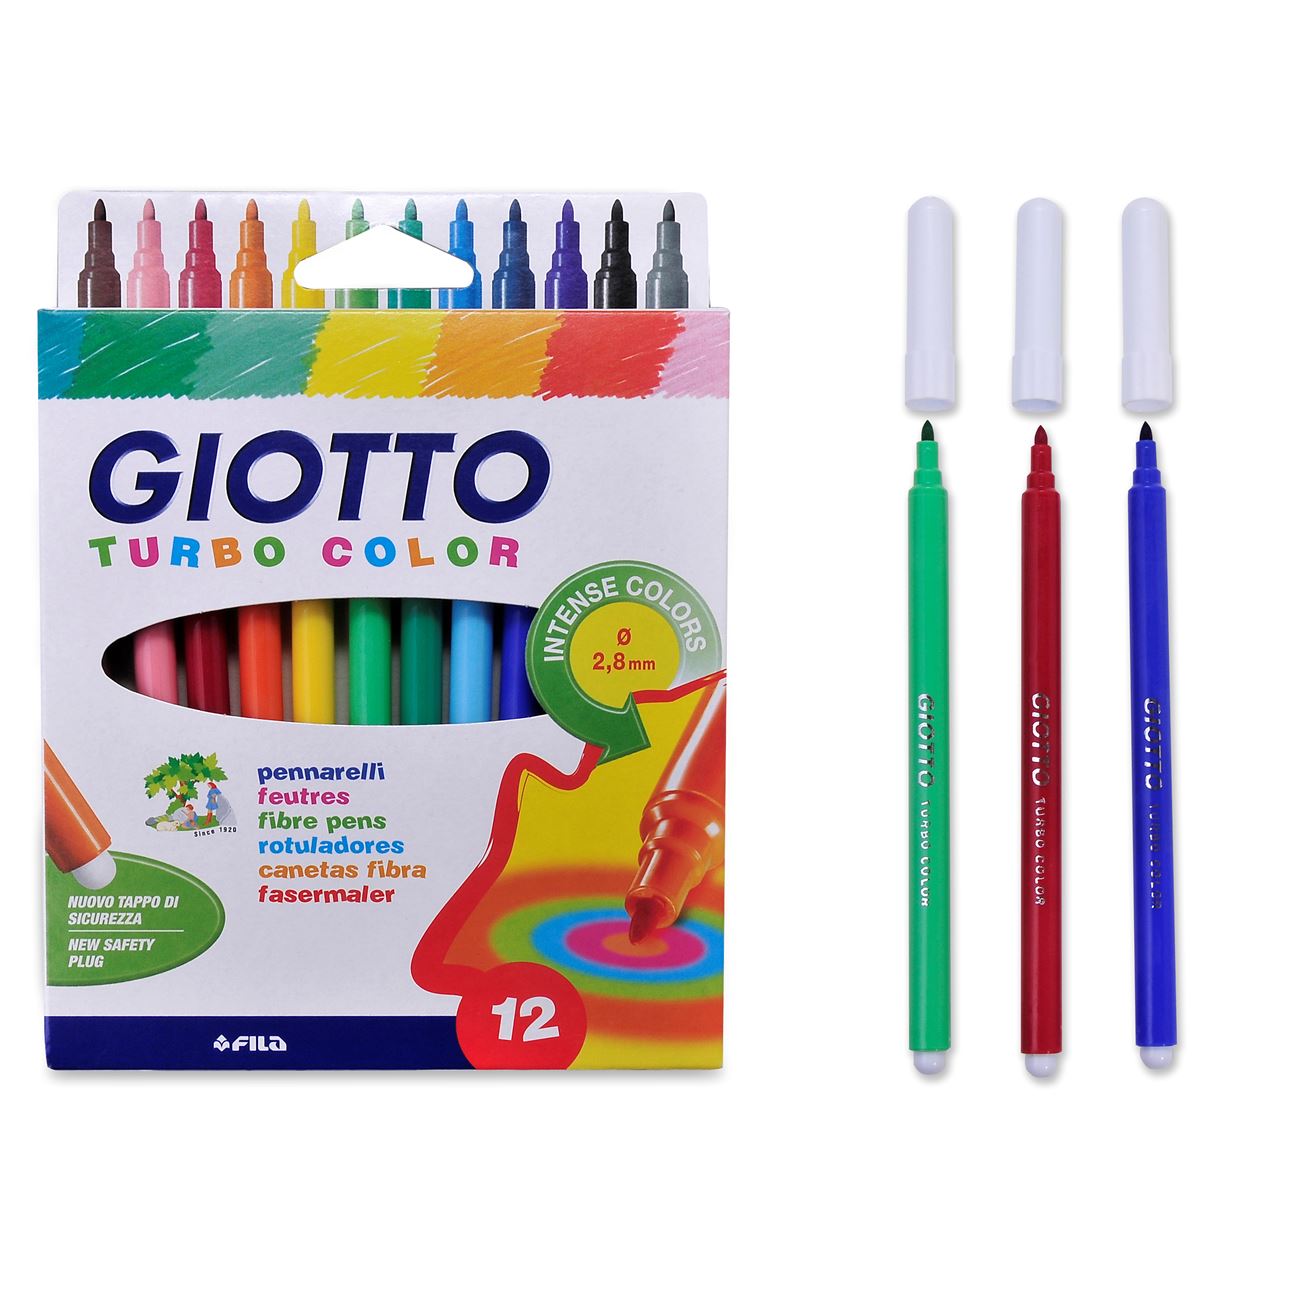 Mosható Giotto filctoll készlet 12 db-os